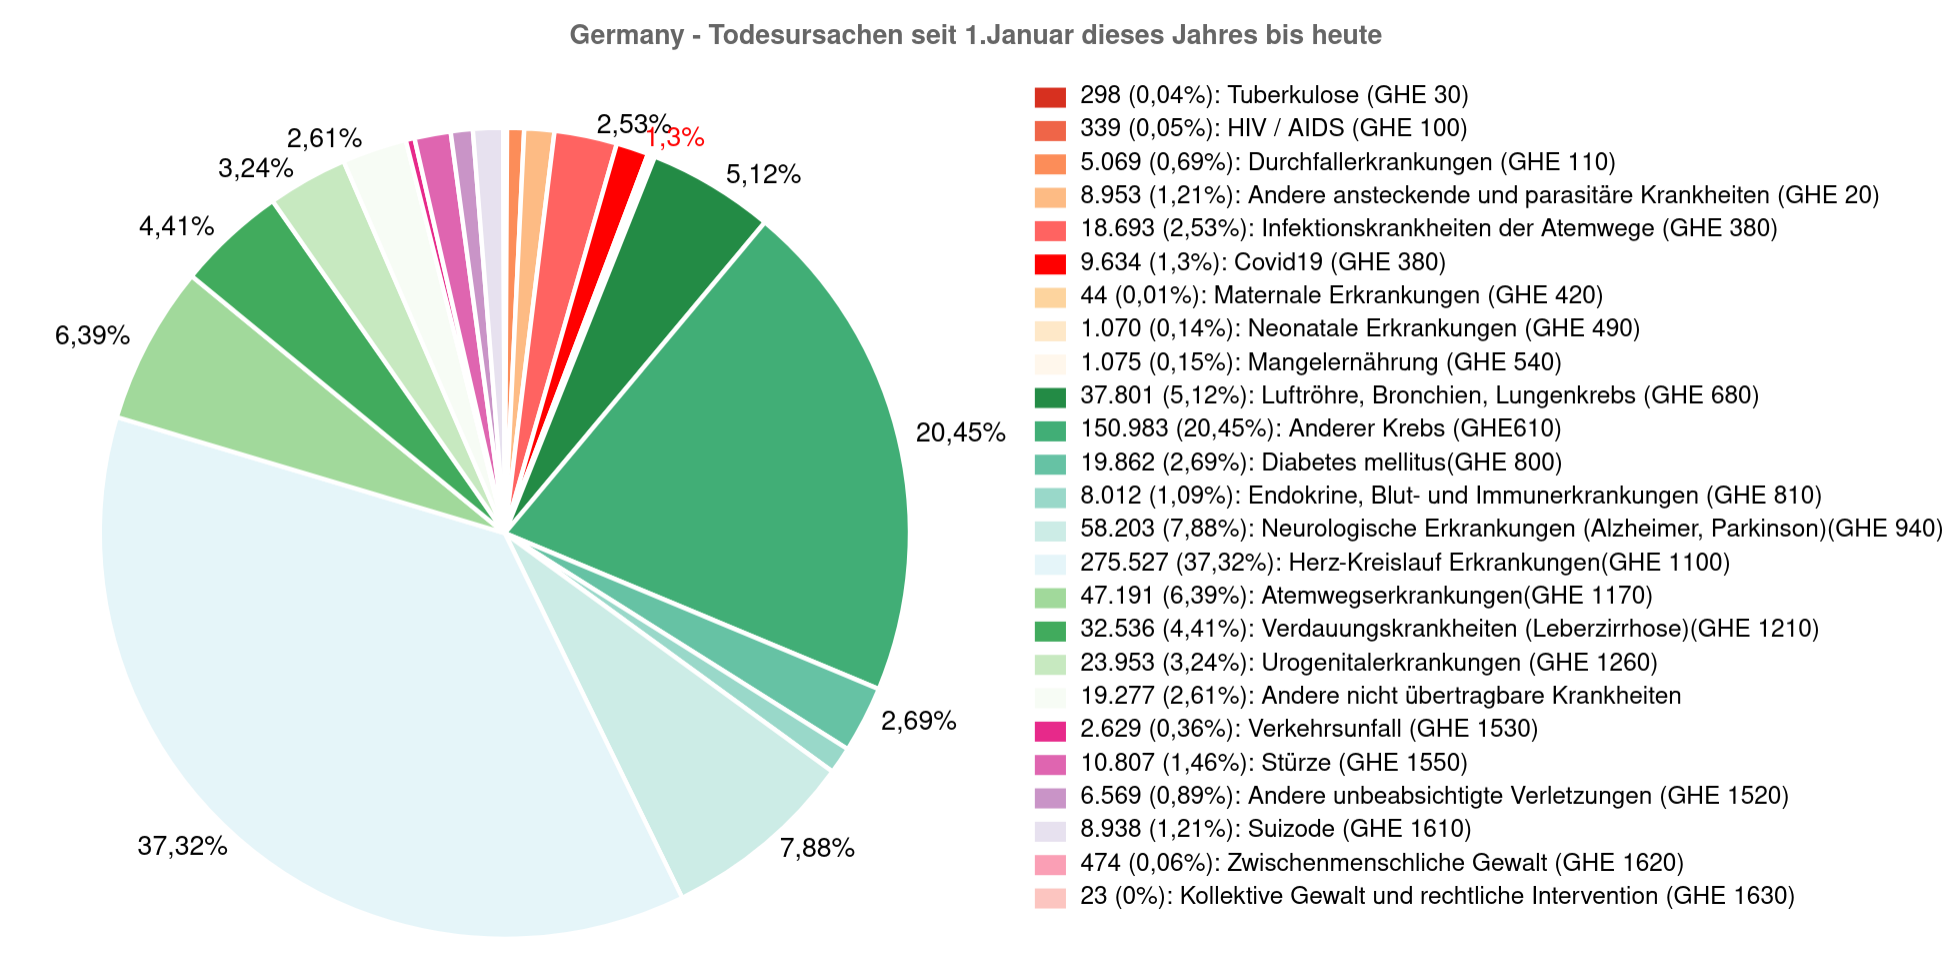 Woran starben die Menschen bislang in Deutschland - Stürze kommen noch